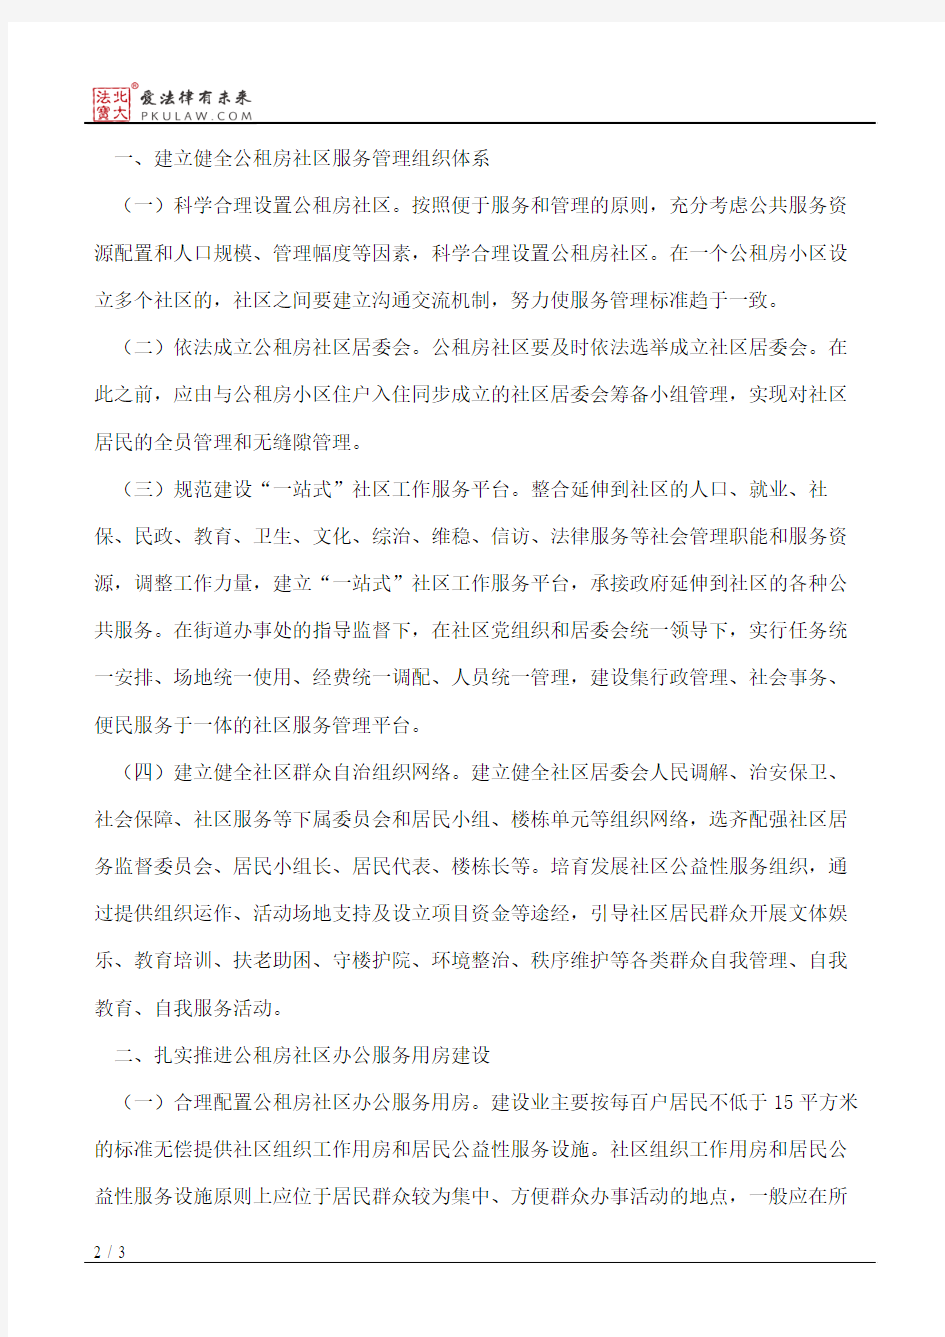 重庆市民政局、重庆市国土资源和房屋管理局、重庆市公共租赁房管